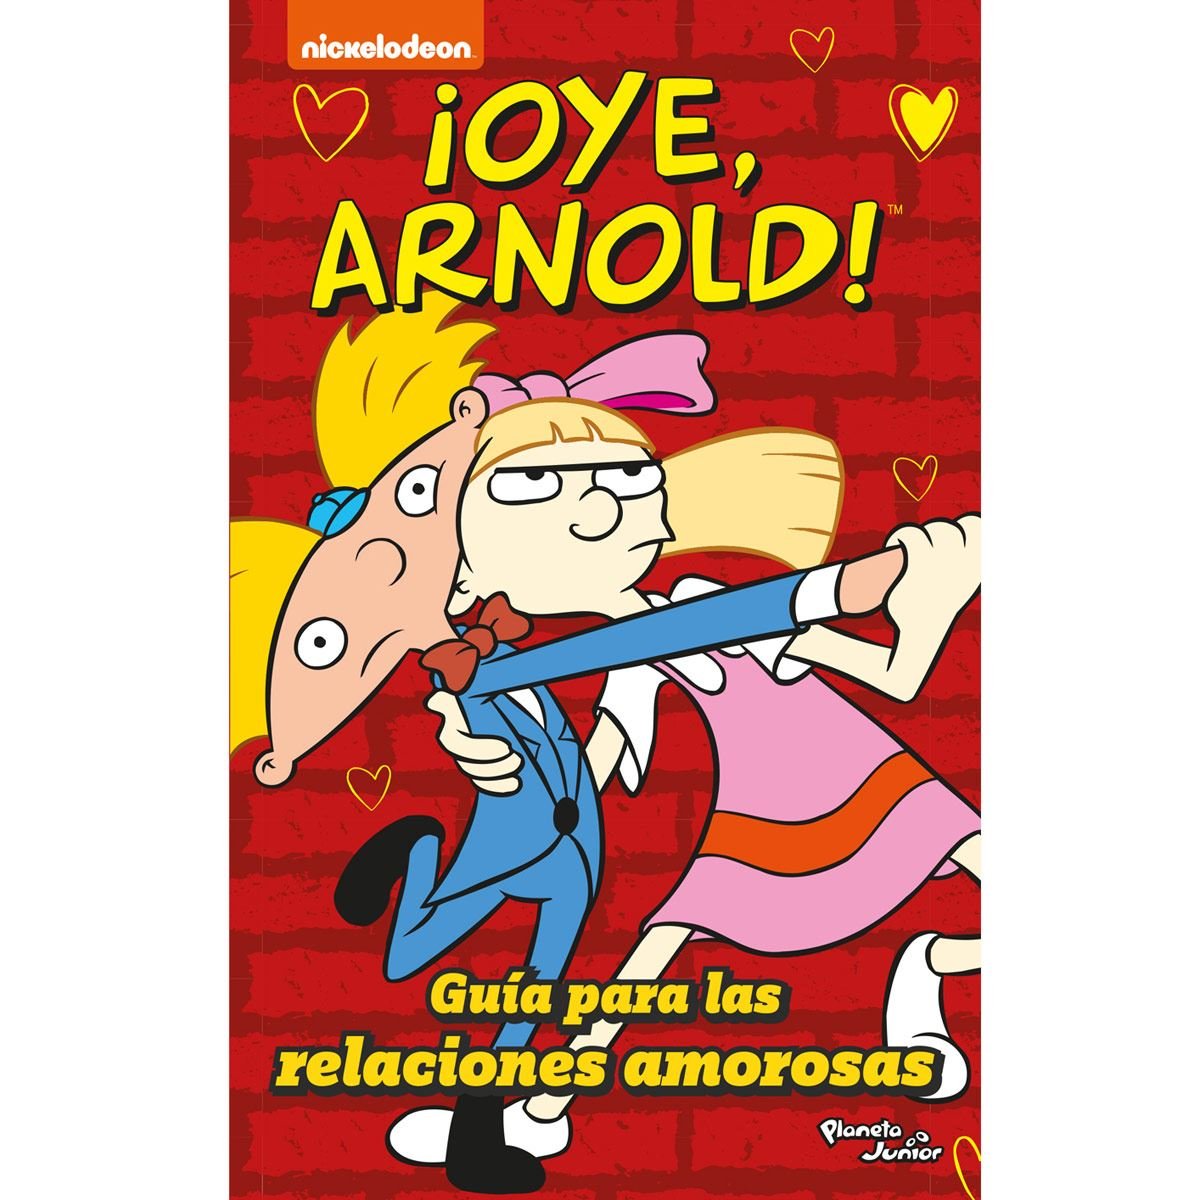 ¡Oye, Arnold! Guía para las relaciones amorosas